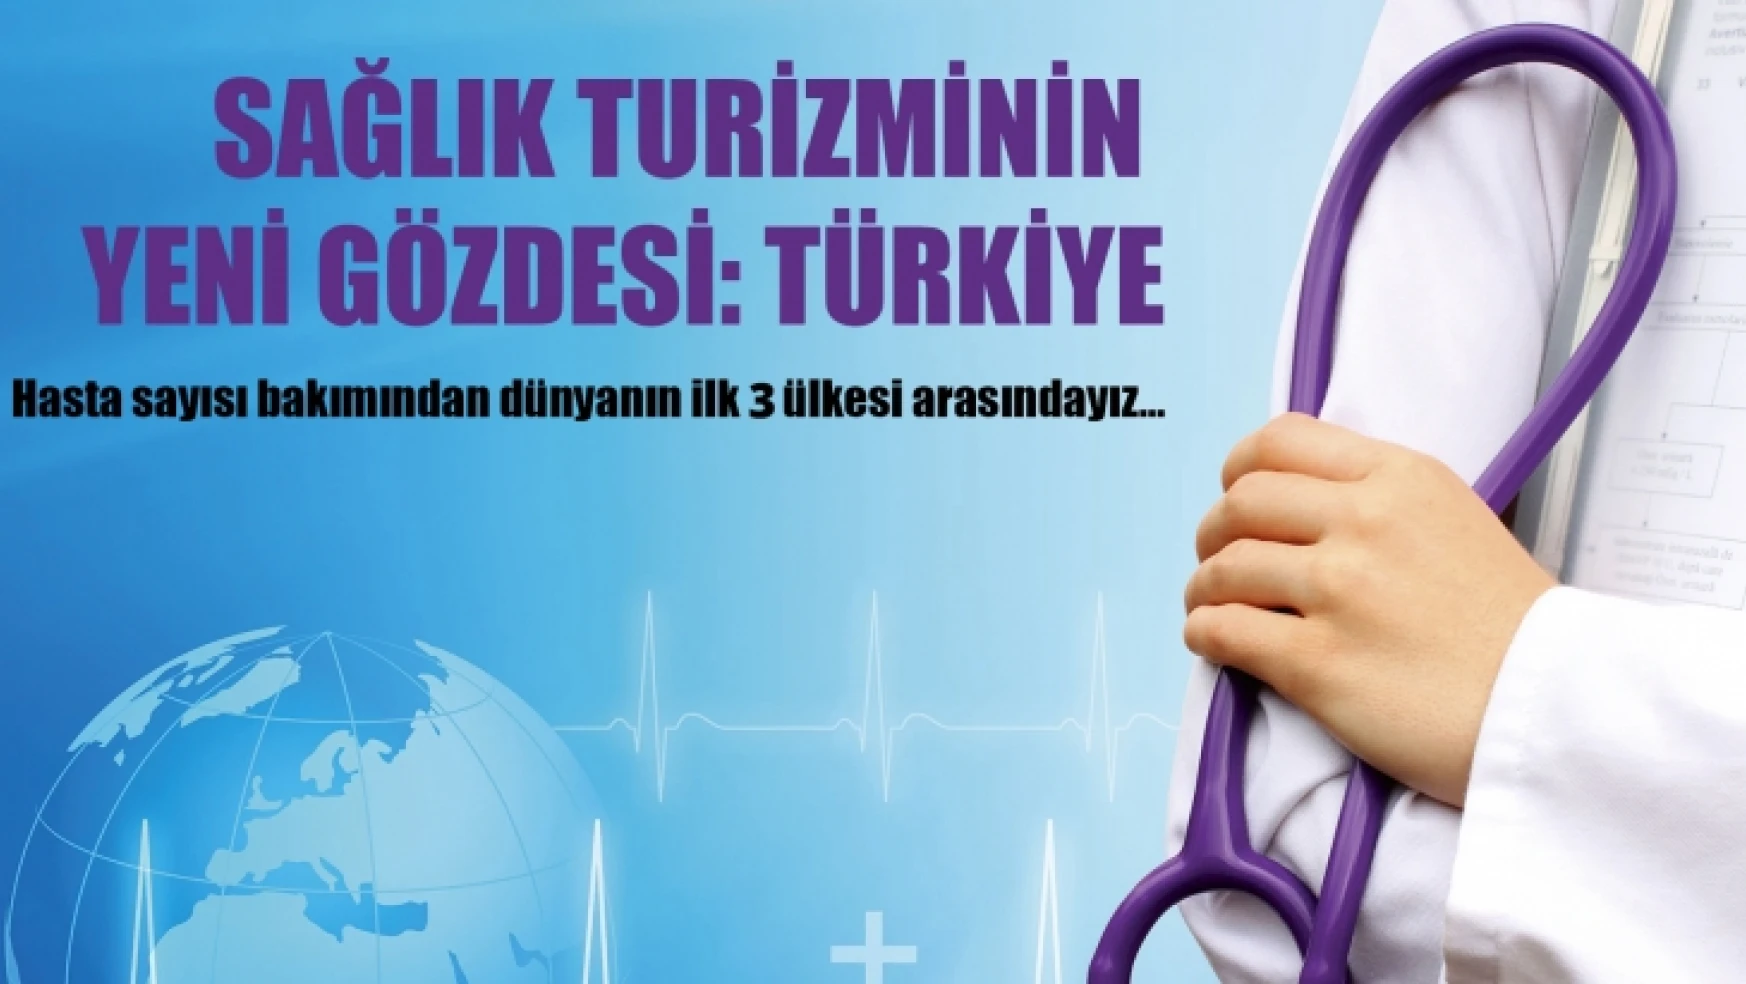 Sağlık Turizminin Gözdesi:Türkiye